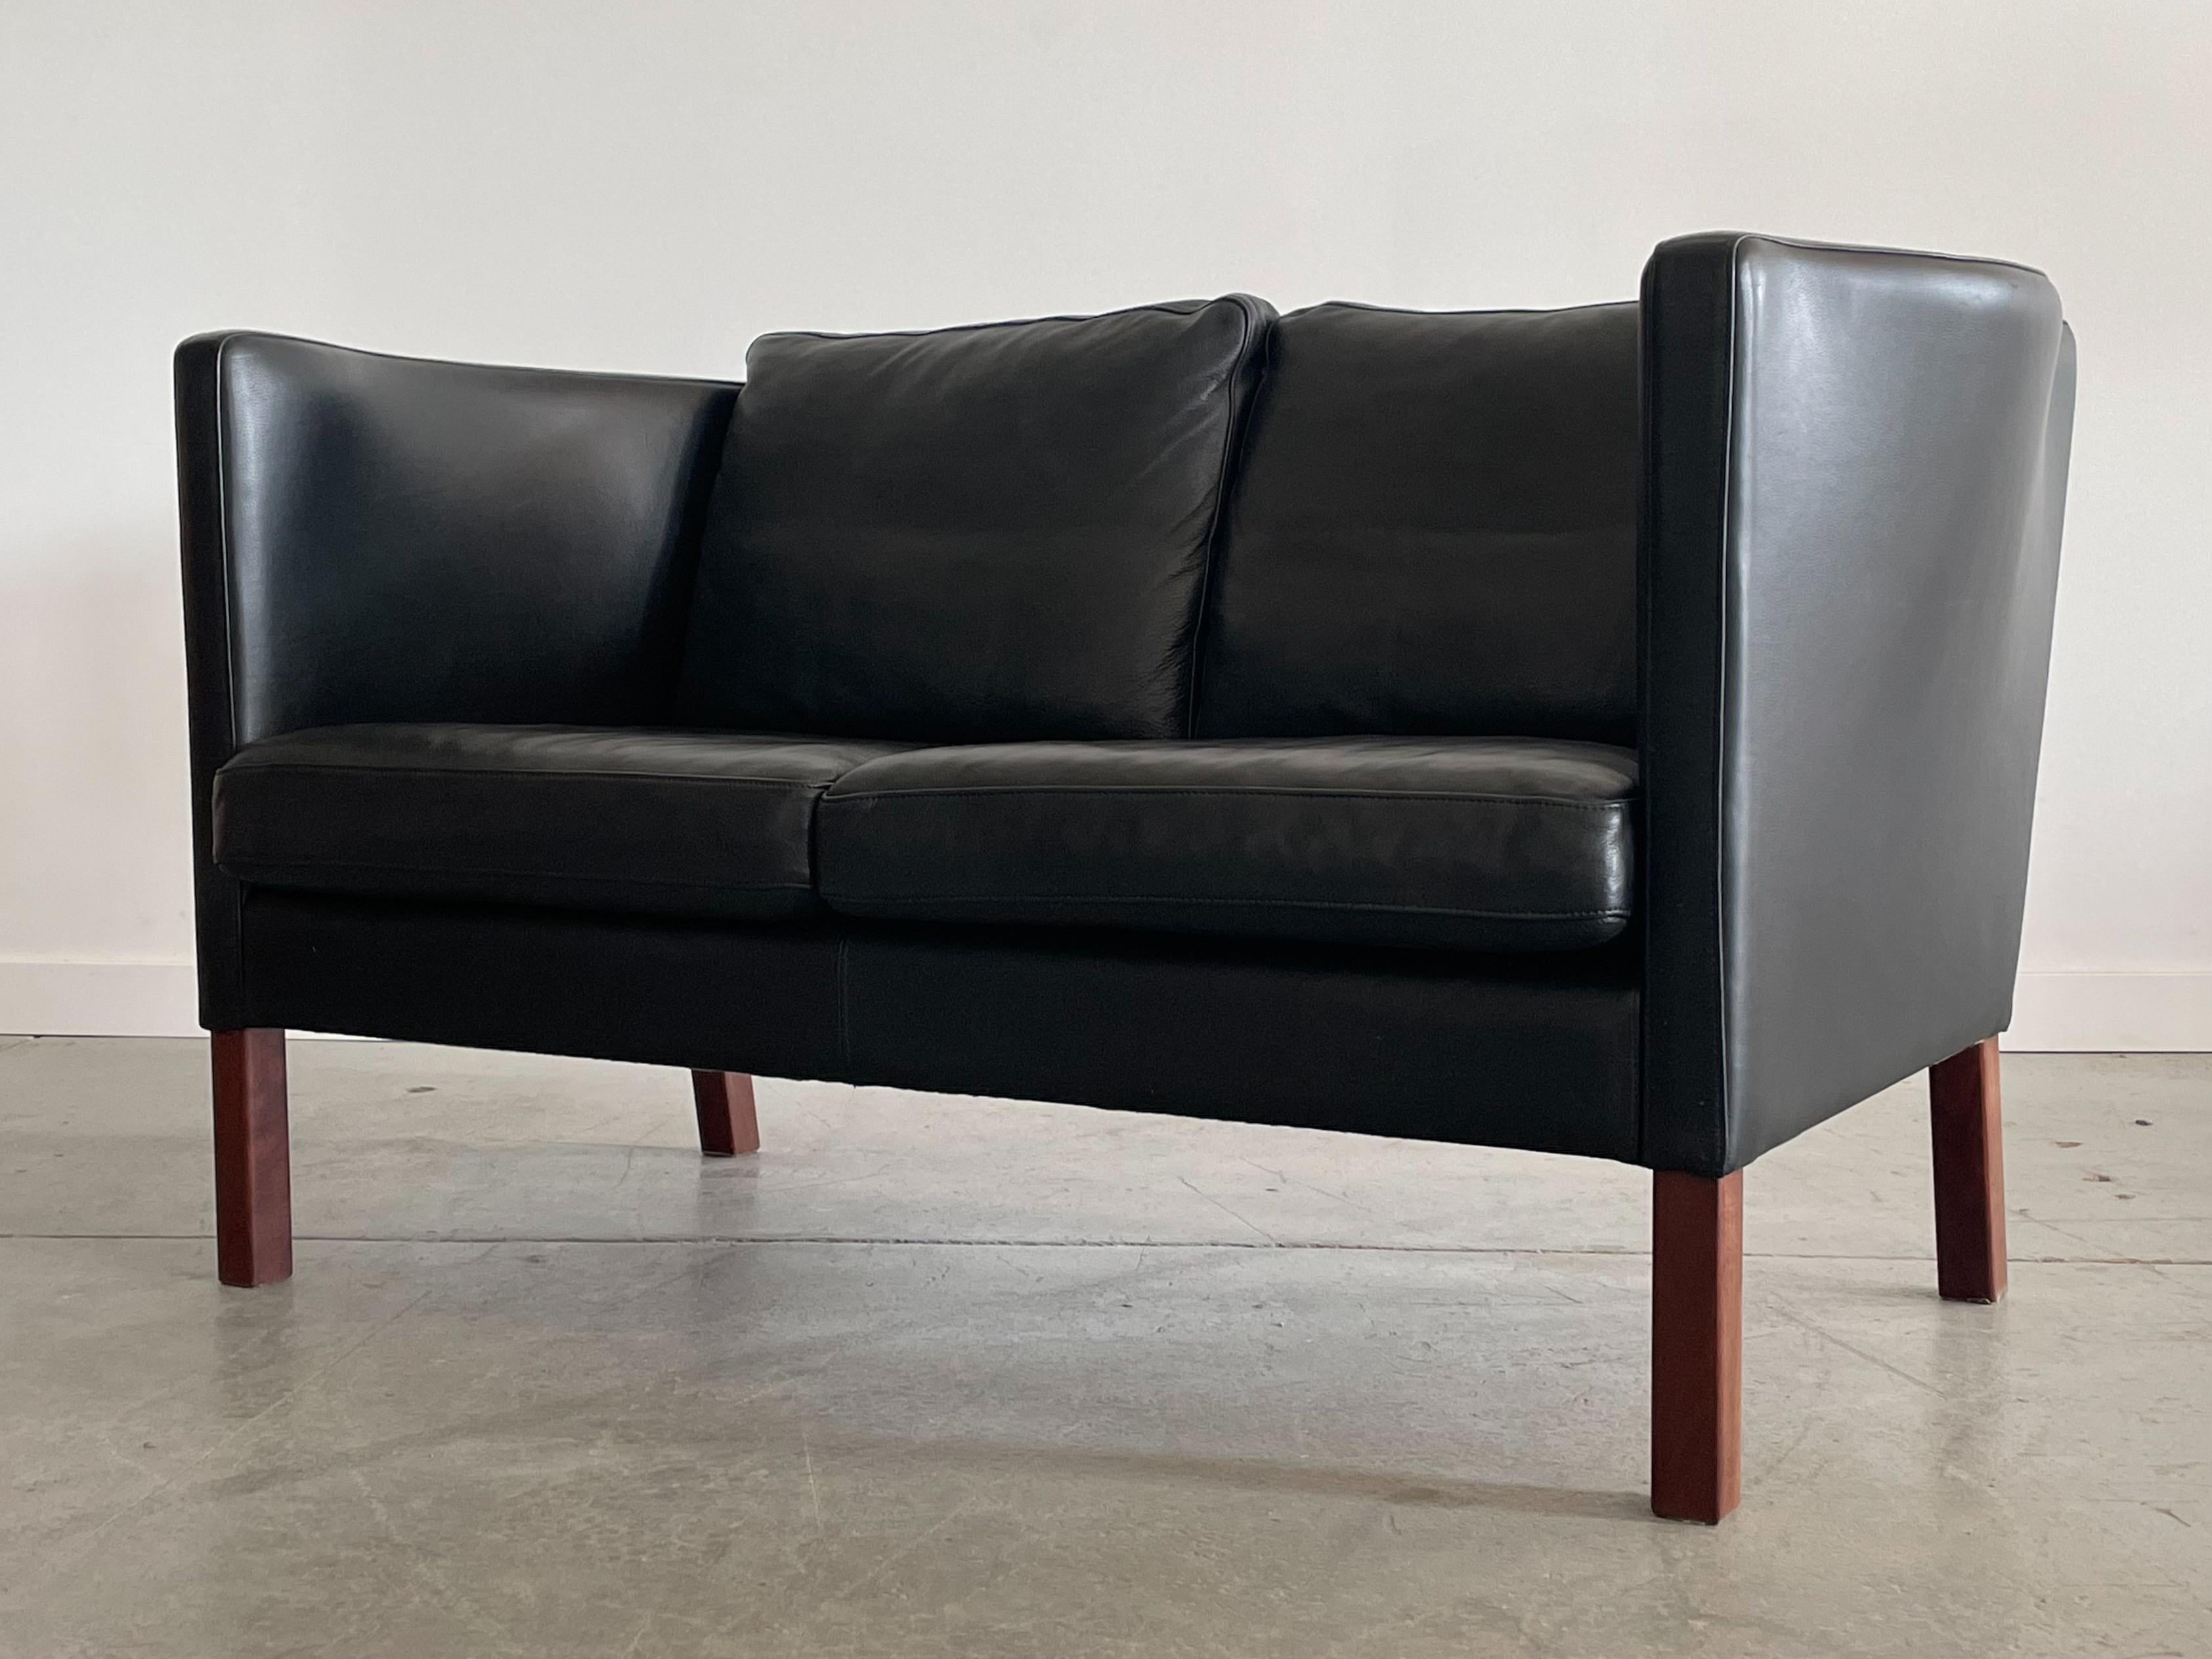 Magnifique canapé deux places modèle AV59 conçu par Arne Vodder pour Nielaus, Danemark. Cette pièce présente un profil élancé typique des designs danois avec des pieds en hêtre teinté de bois de rose. Les panneaux latéraux profilés uniques offrent